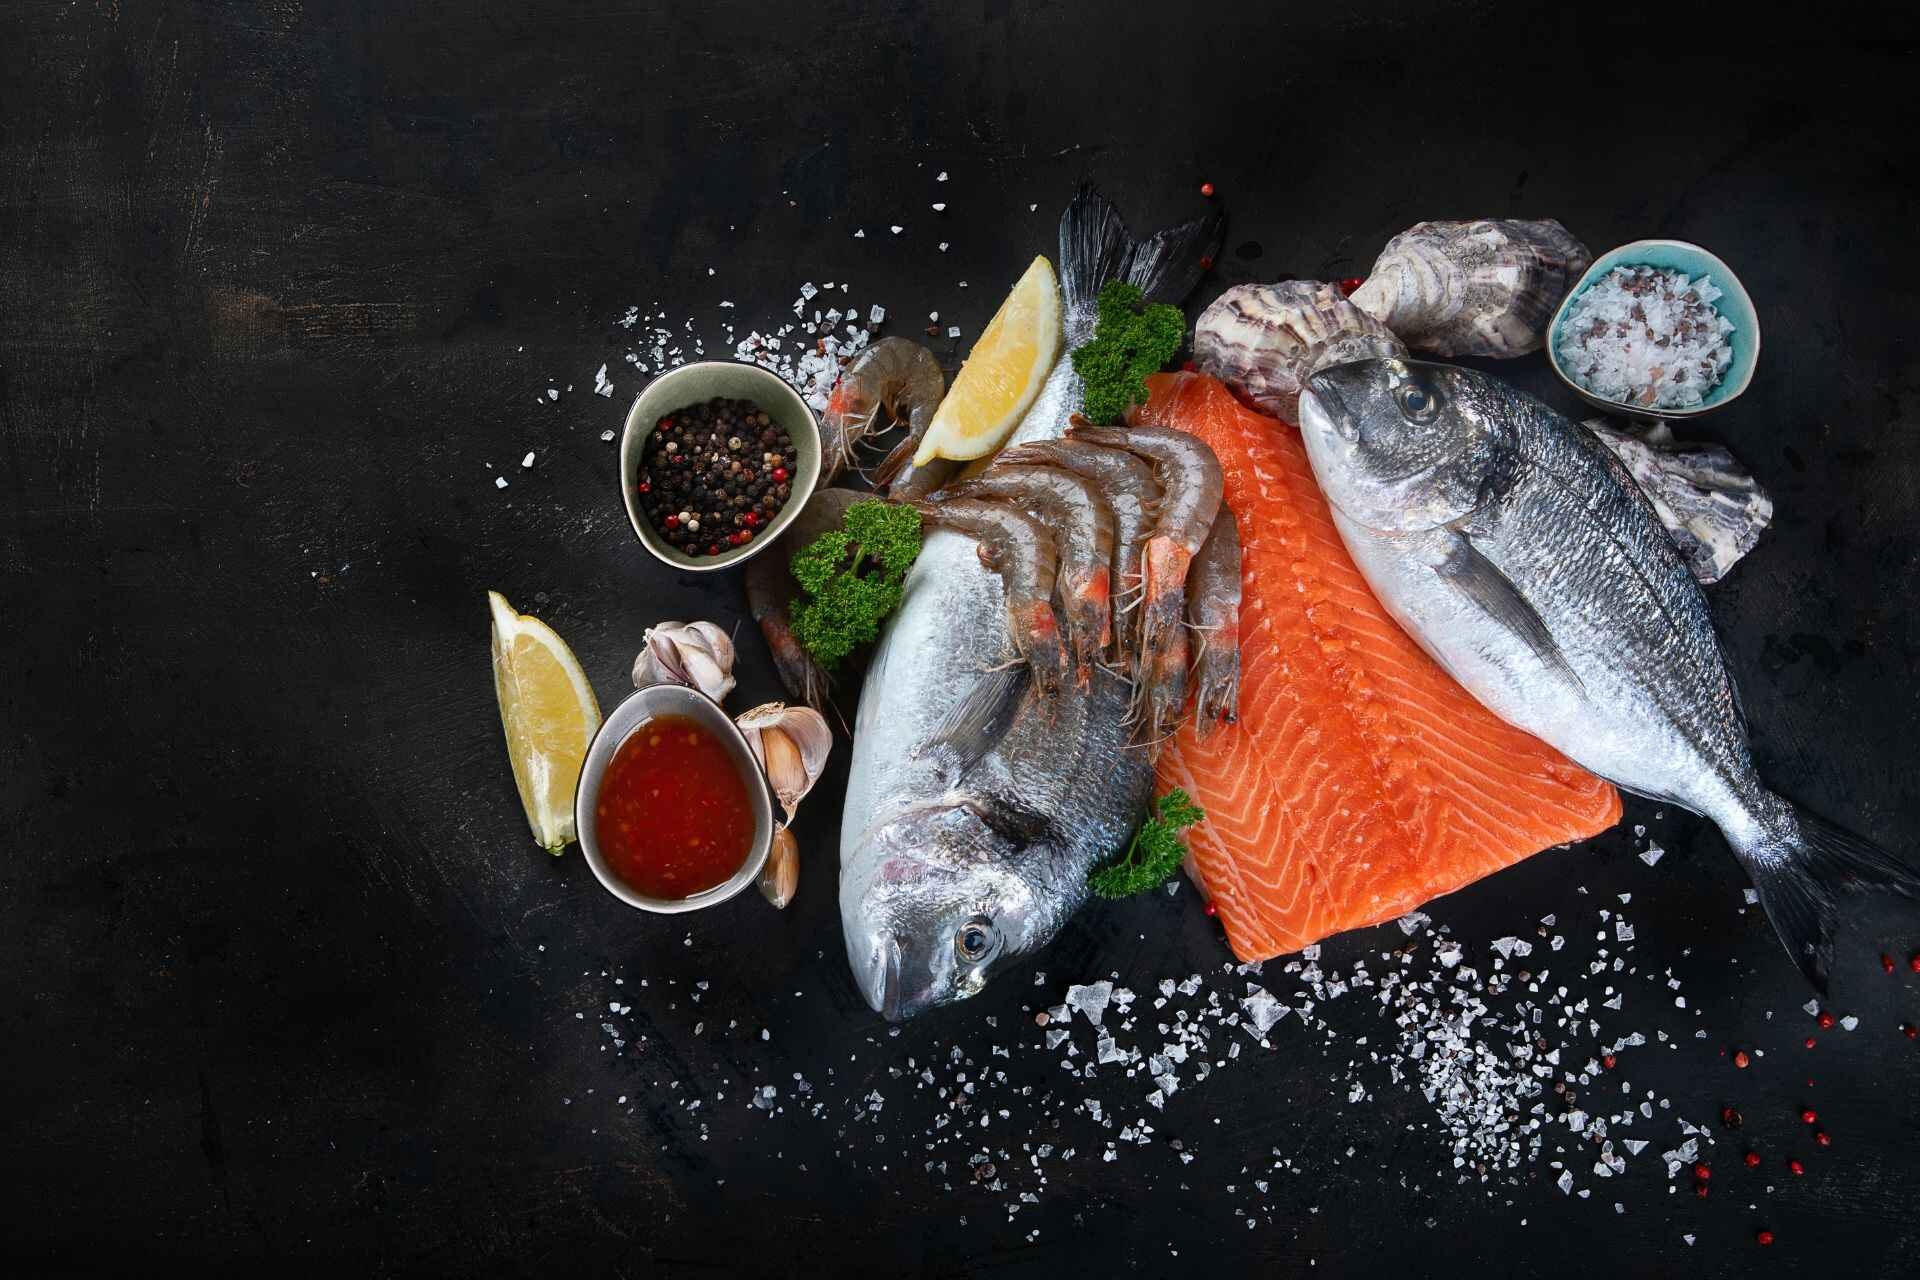 Over 30: si consiglia il consumo di pesce perché ricco di Omega 3 e di Vitamina D